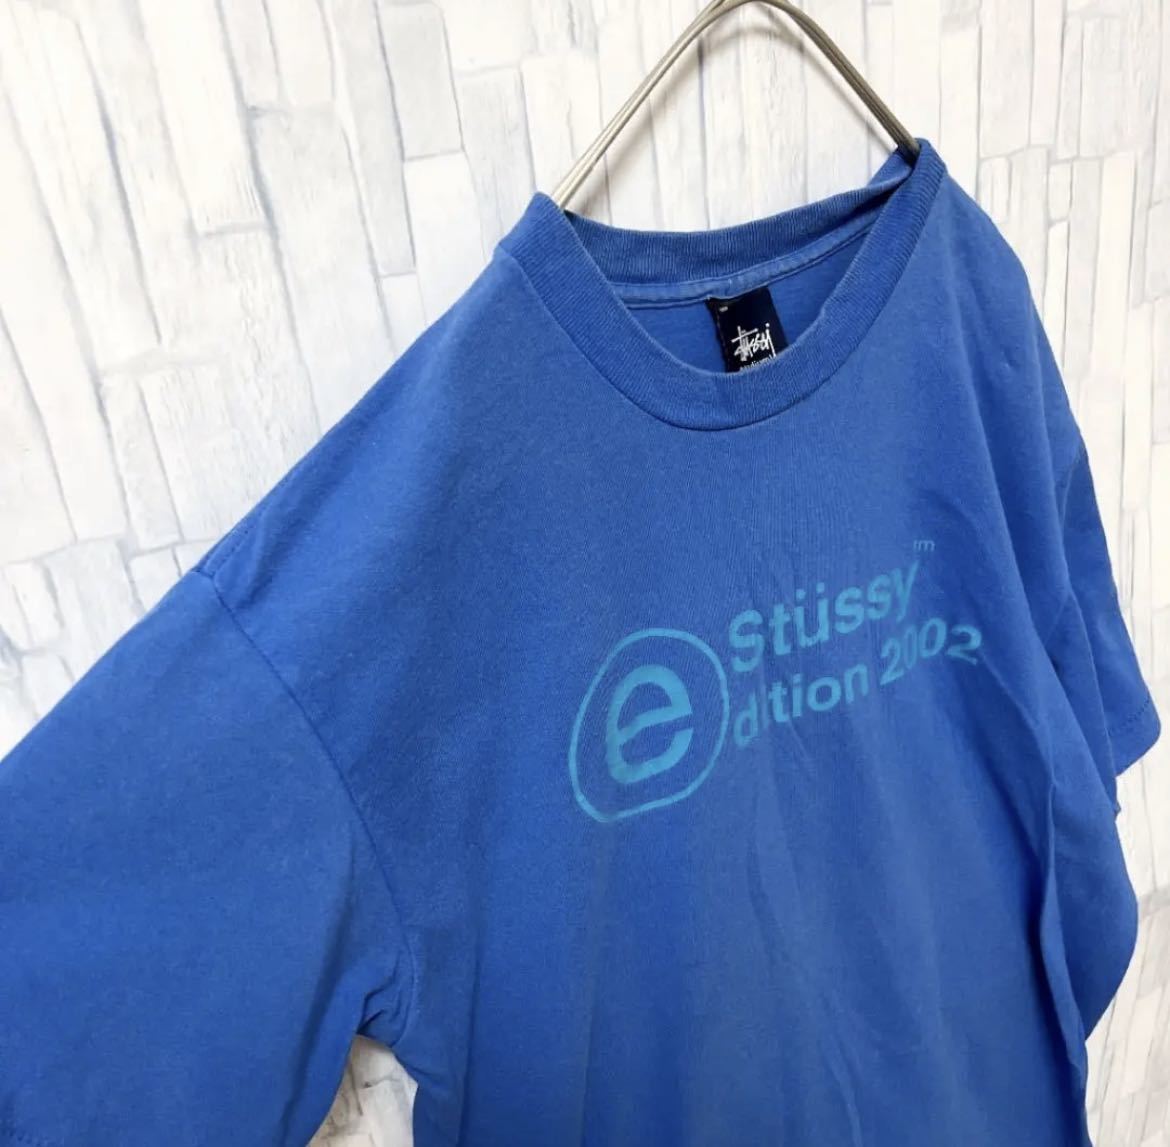 old stussy オールド ステューシー 90s 90年代 ブルー 半袖 Tシャツ ビッグロゴ デカロゴ ビッグプリント サイズM USA製  紺タグ 送料無料